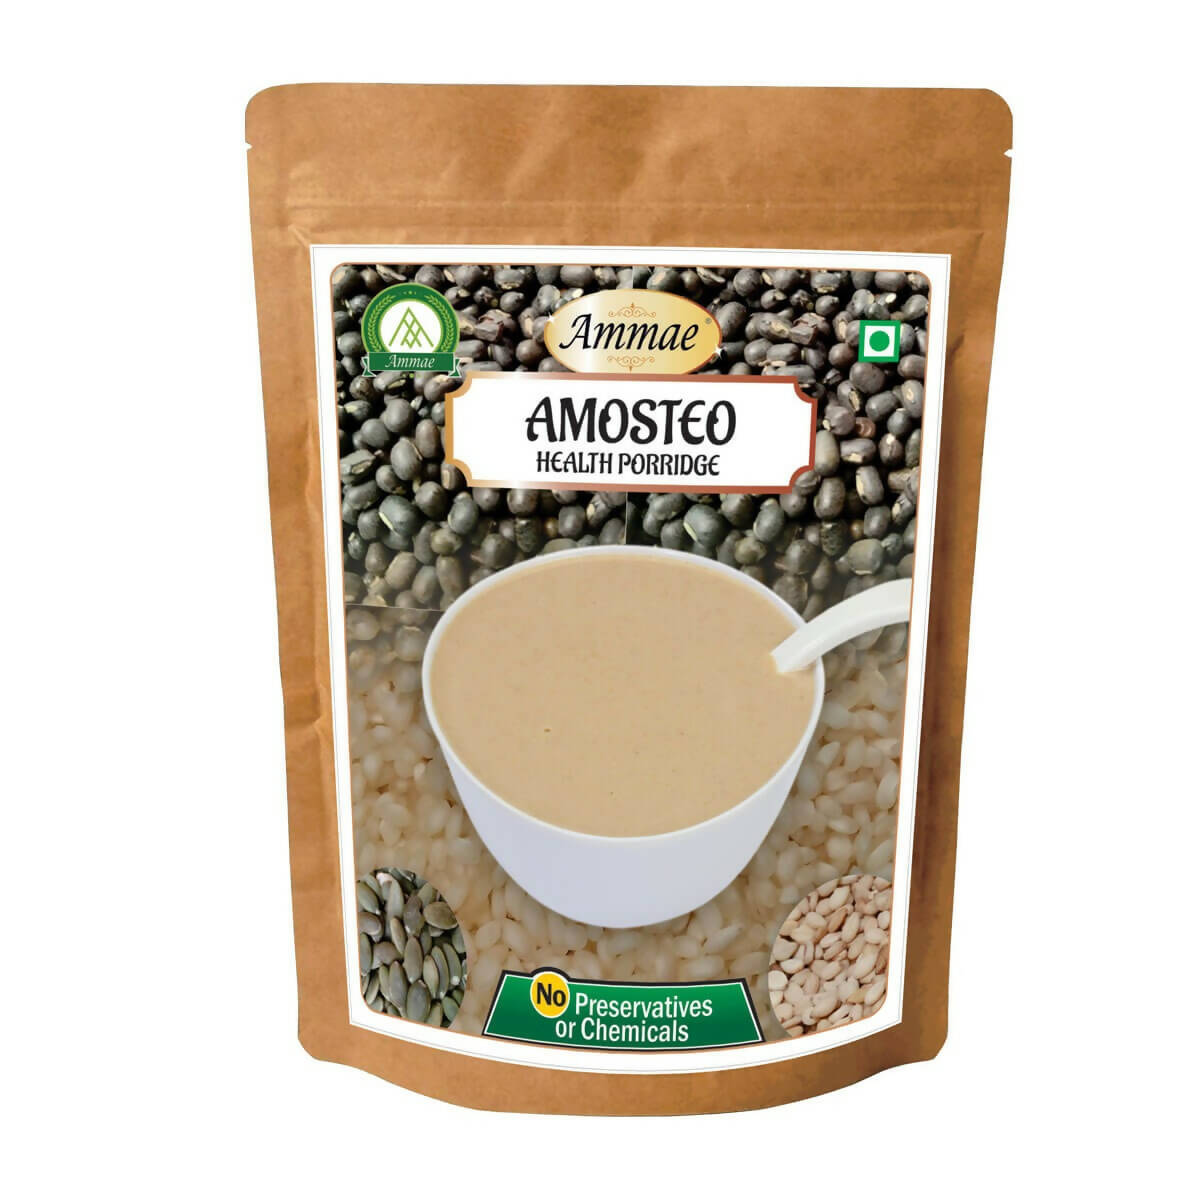 Ammae Amosteo Health Porridge - Distacart